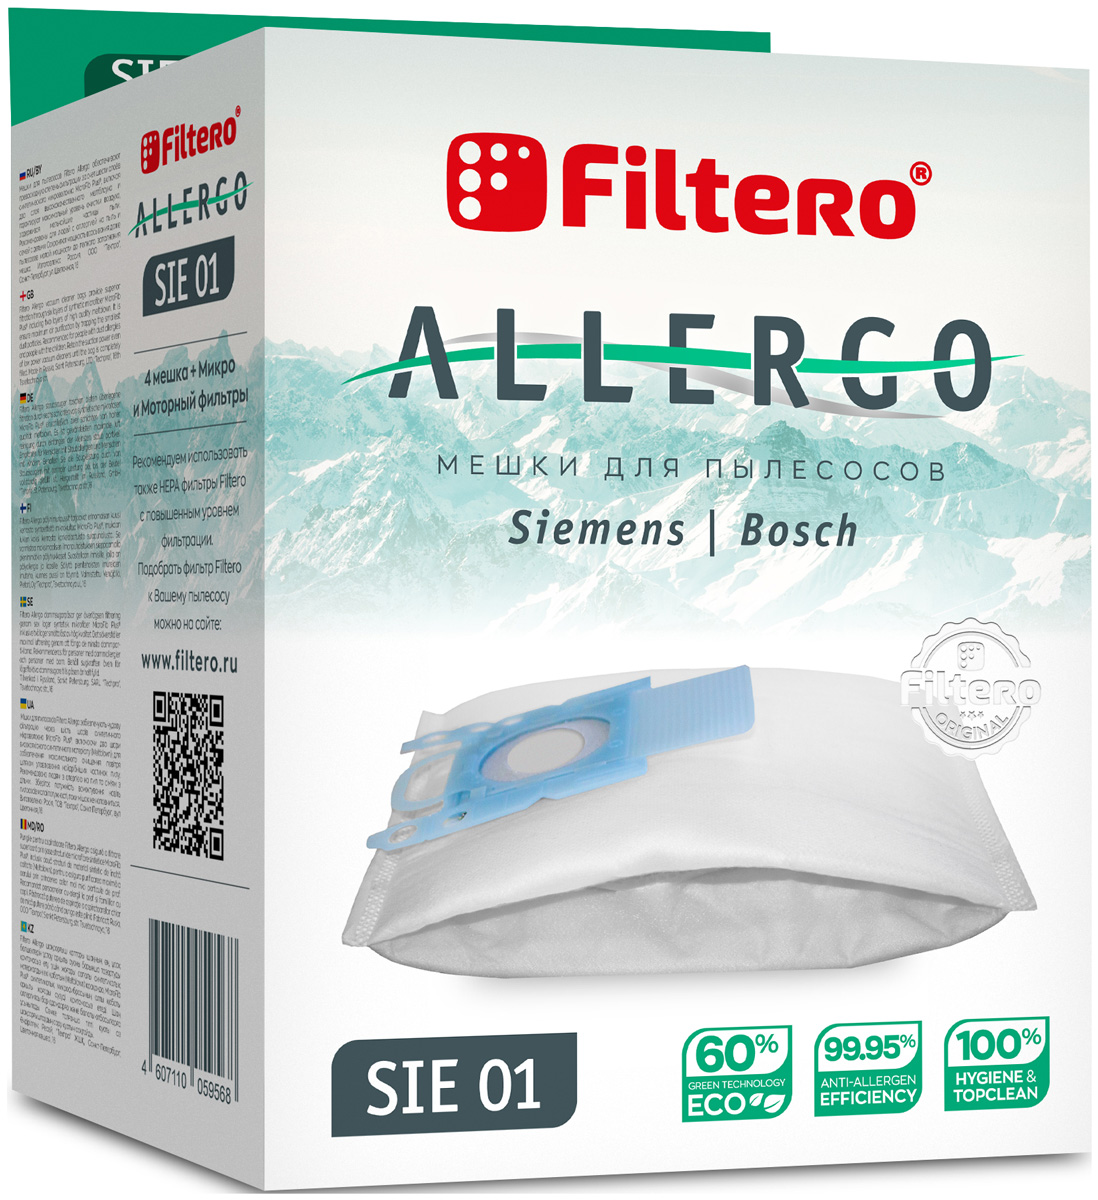 Пылесборники Filtero SIE 01 Allergo 4 шт. + моторный фильтр и микрофильтр